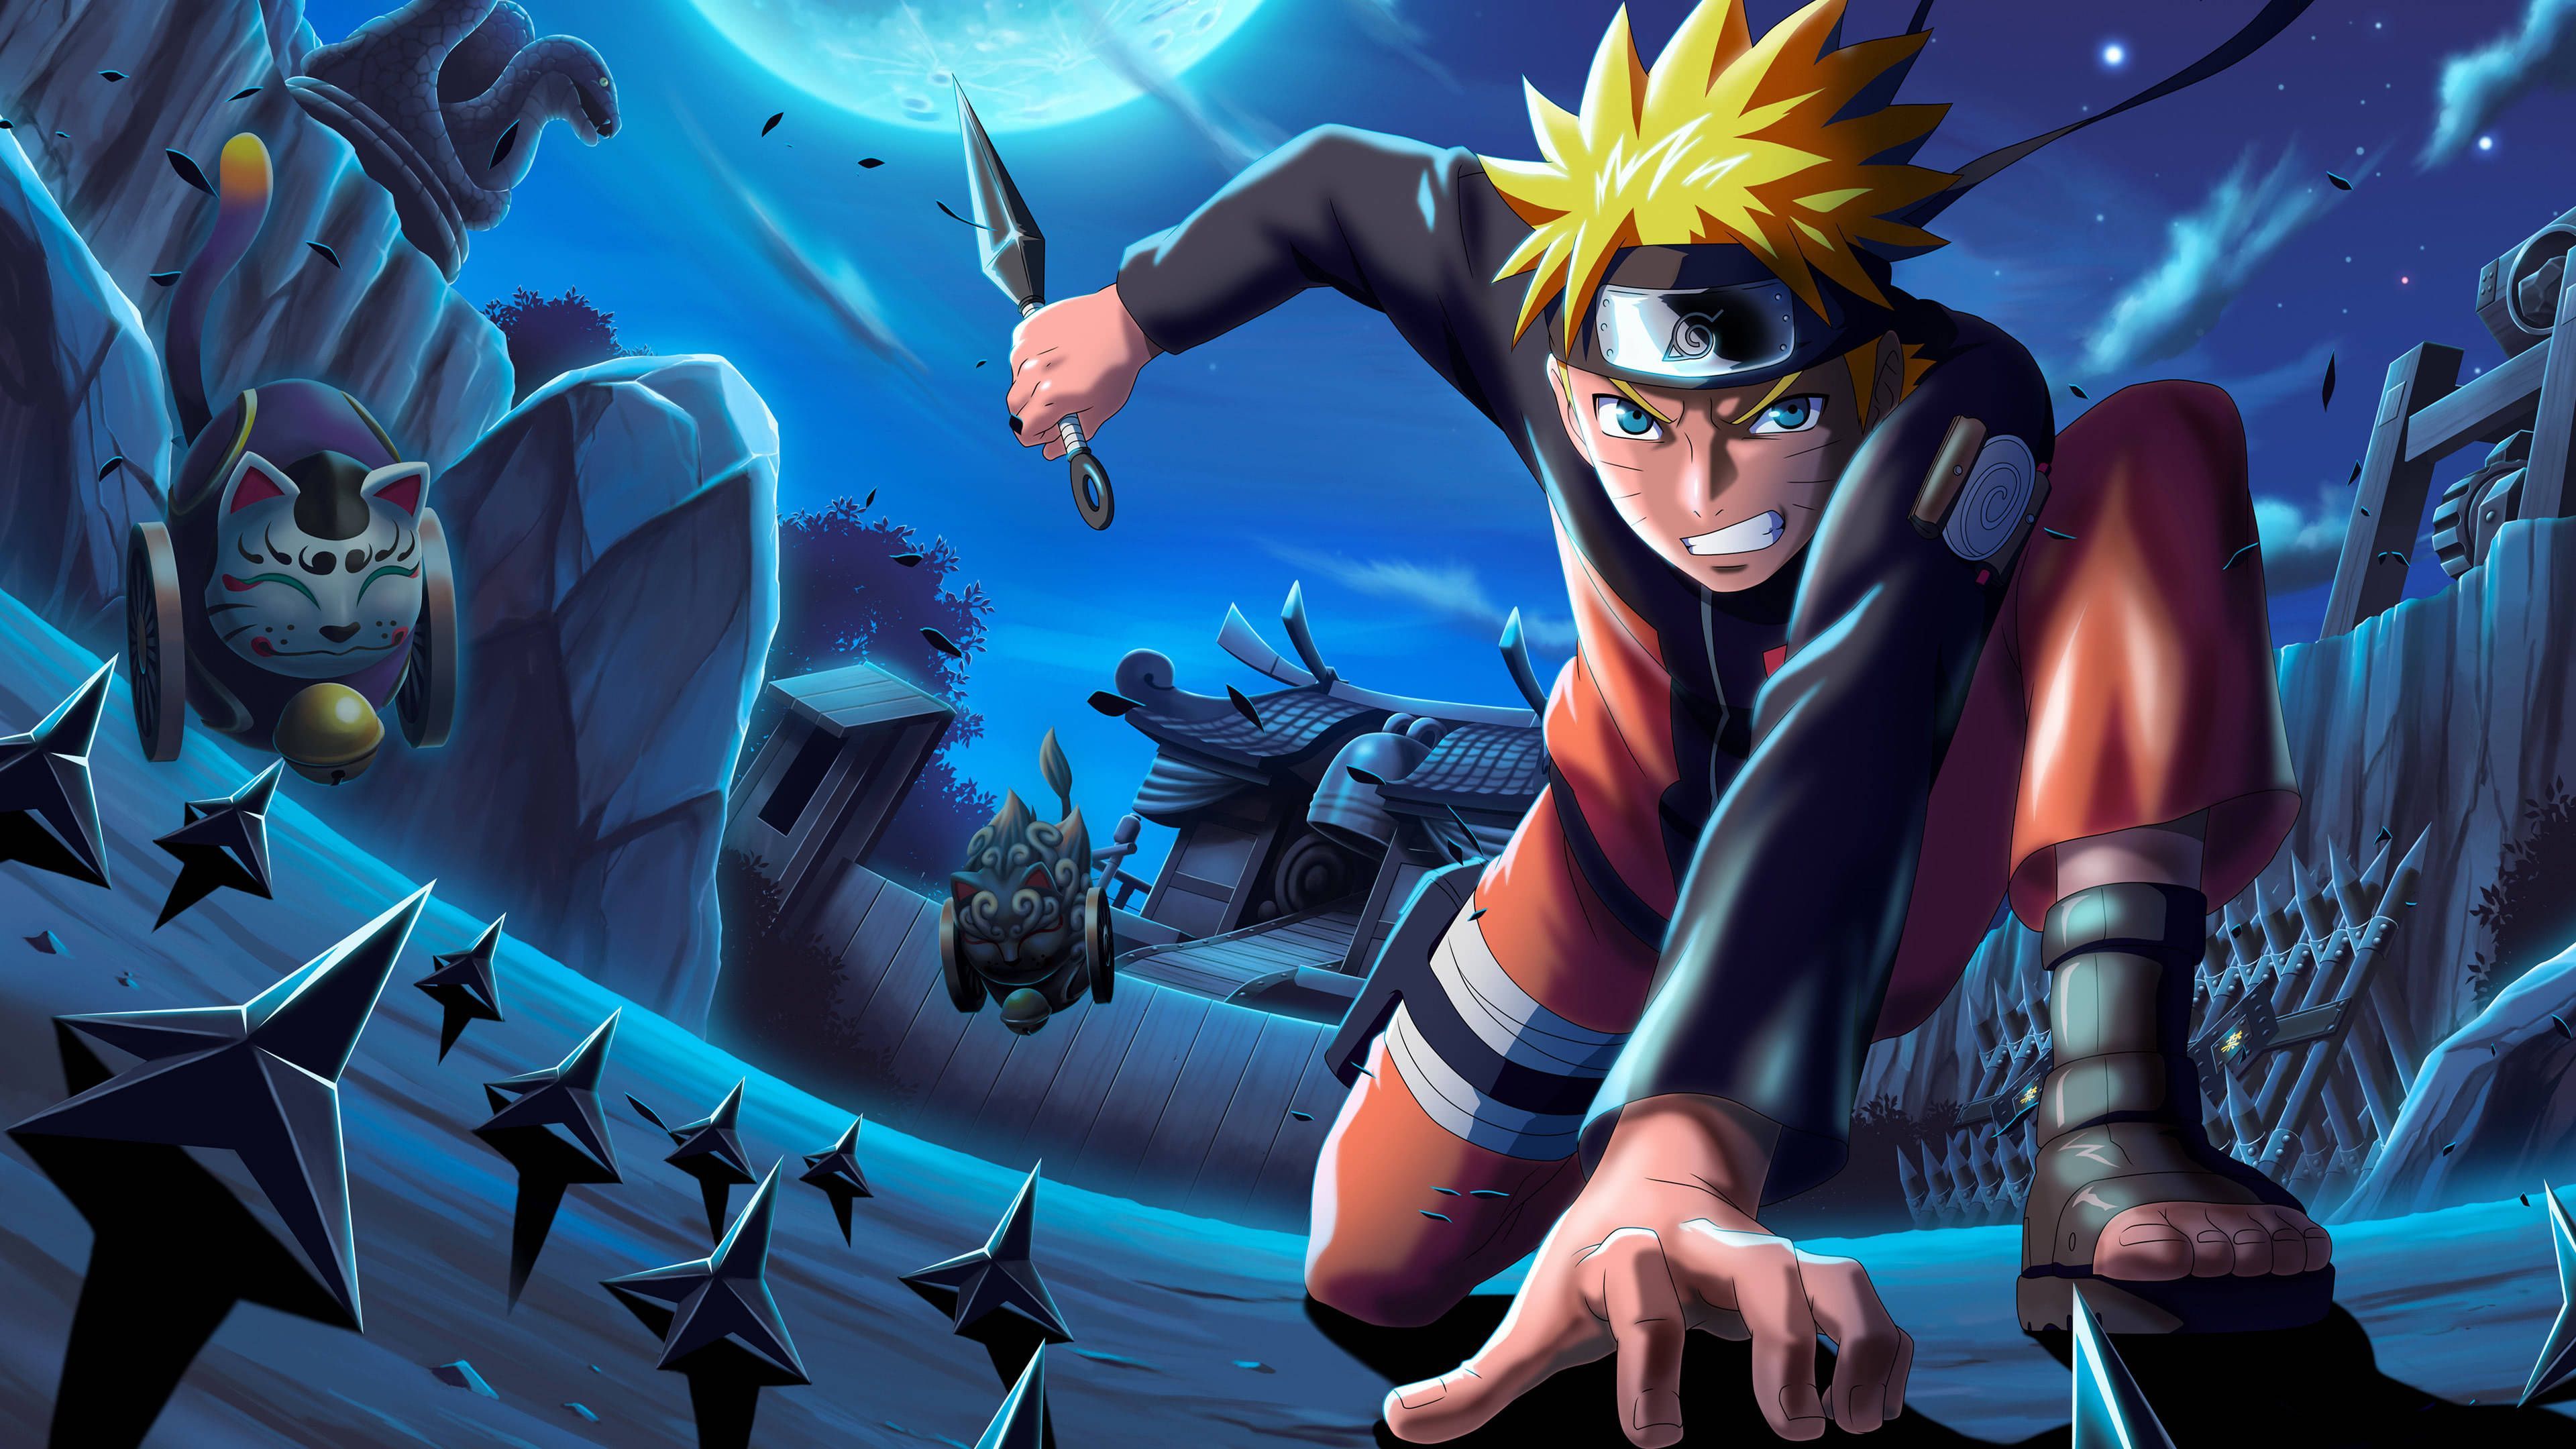 Khám phá bộ sưu tập hình nền Naruto đầy đặc sắc và cập nhật thường xuyên từ chủ đề hình ảnh mới nhất của seri.